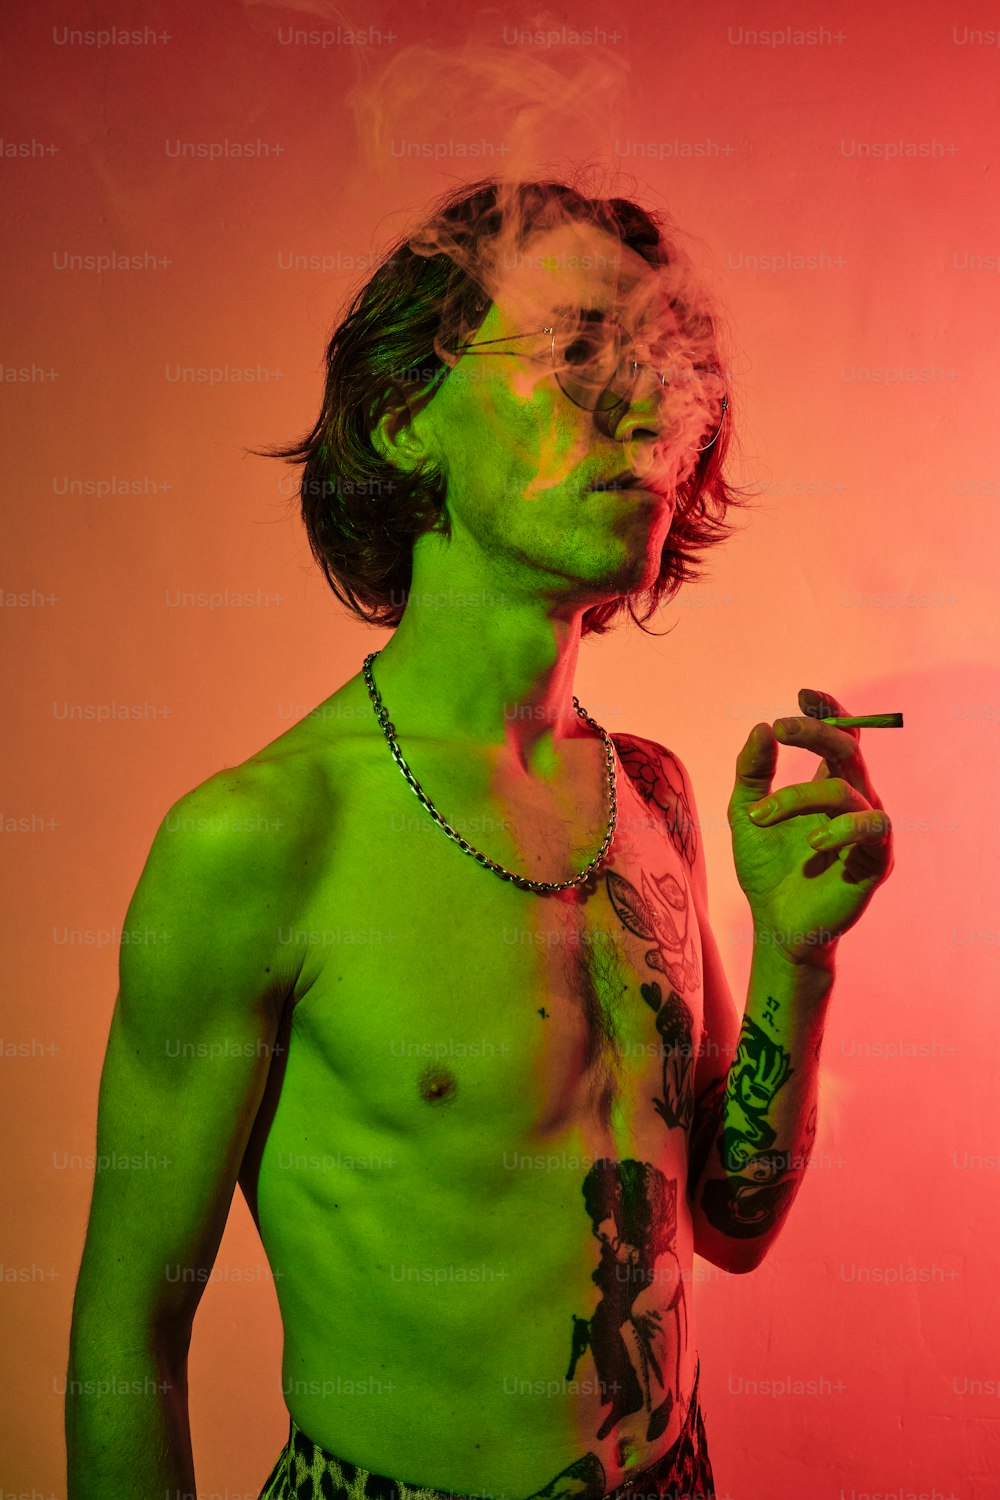 초록색 셔츠를 입고 담배를 피우는 남자